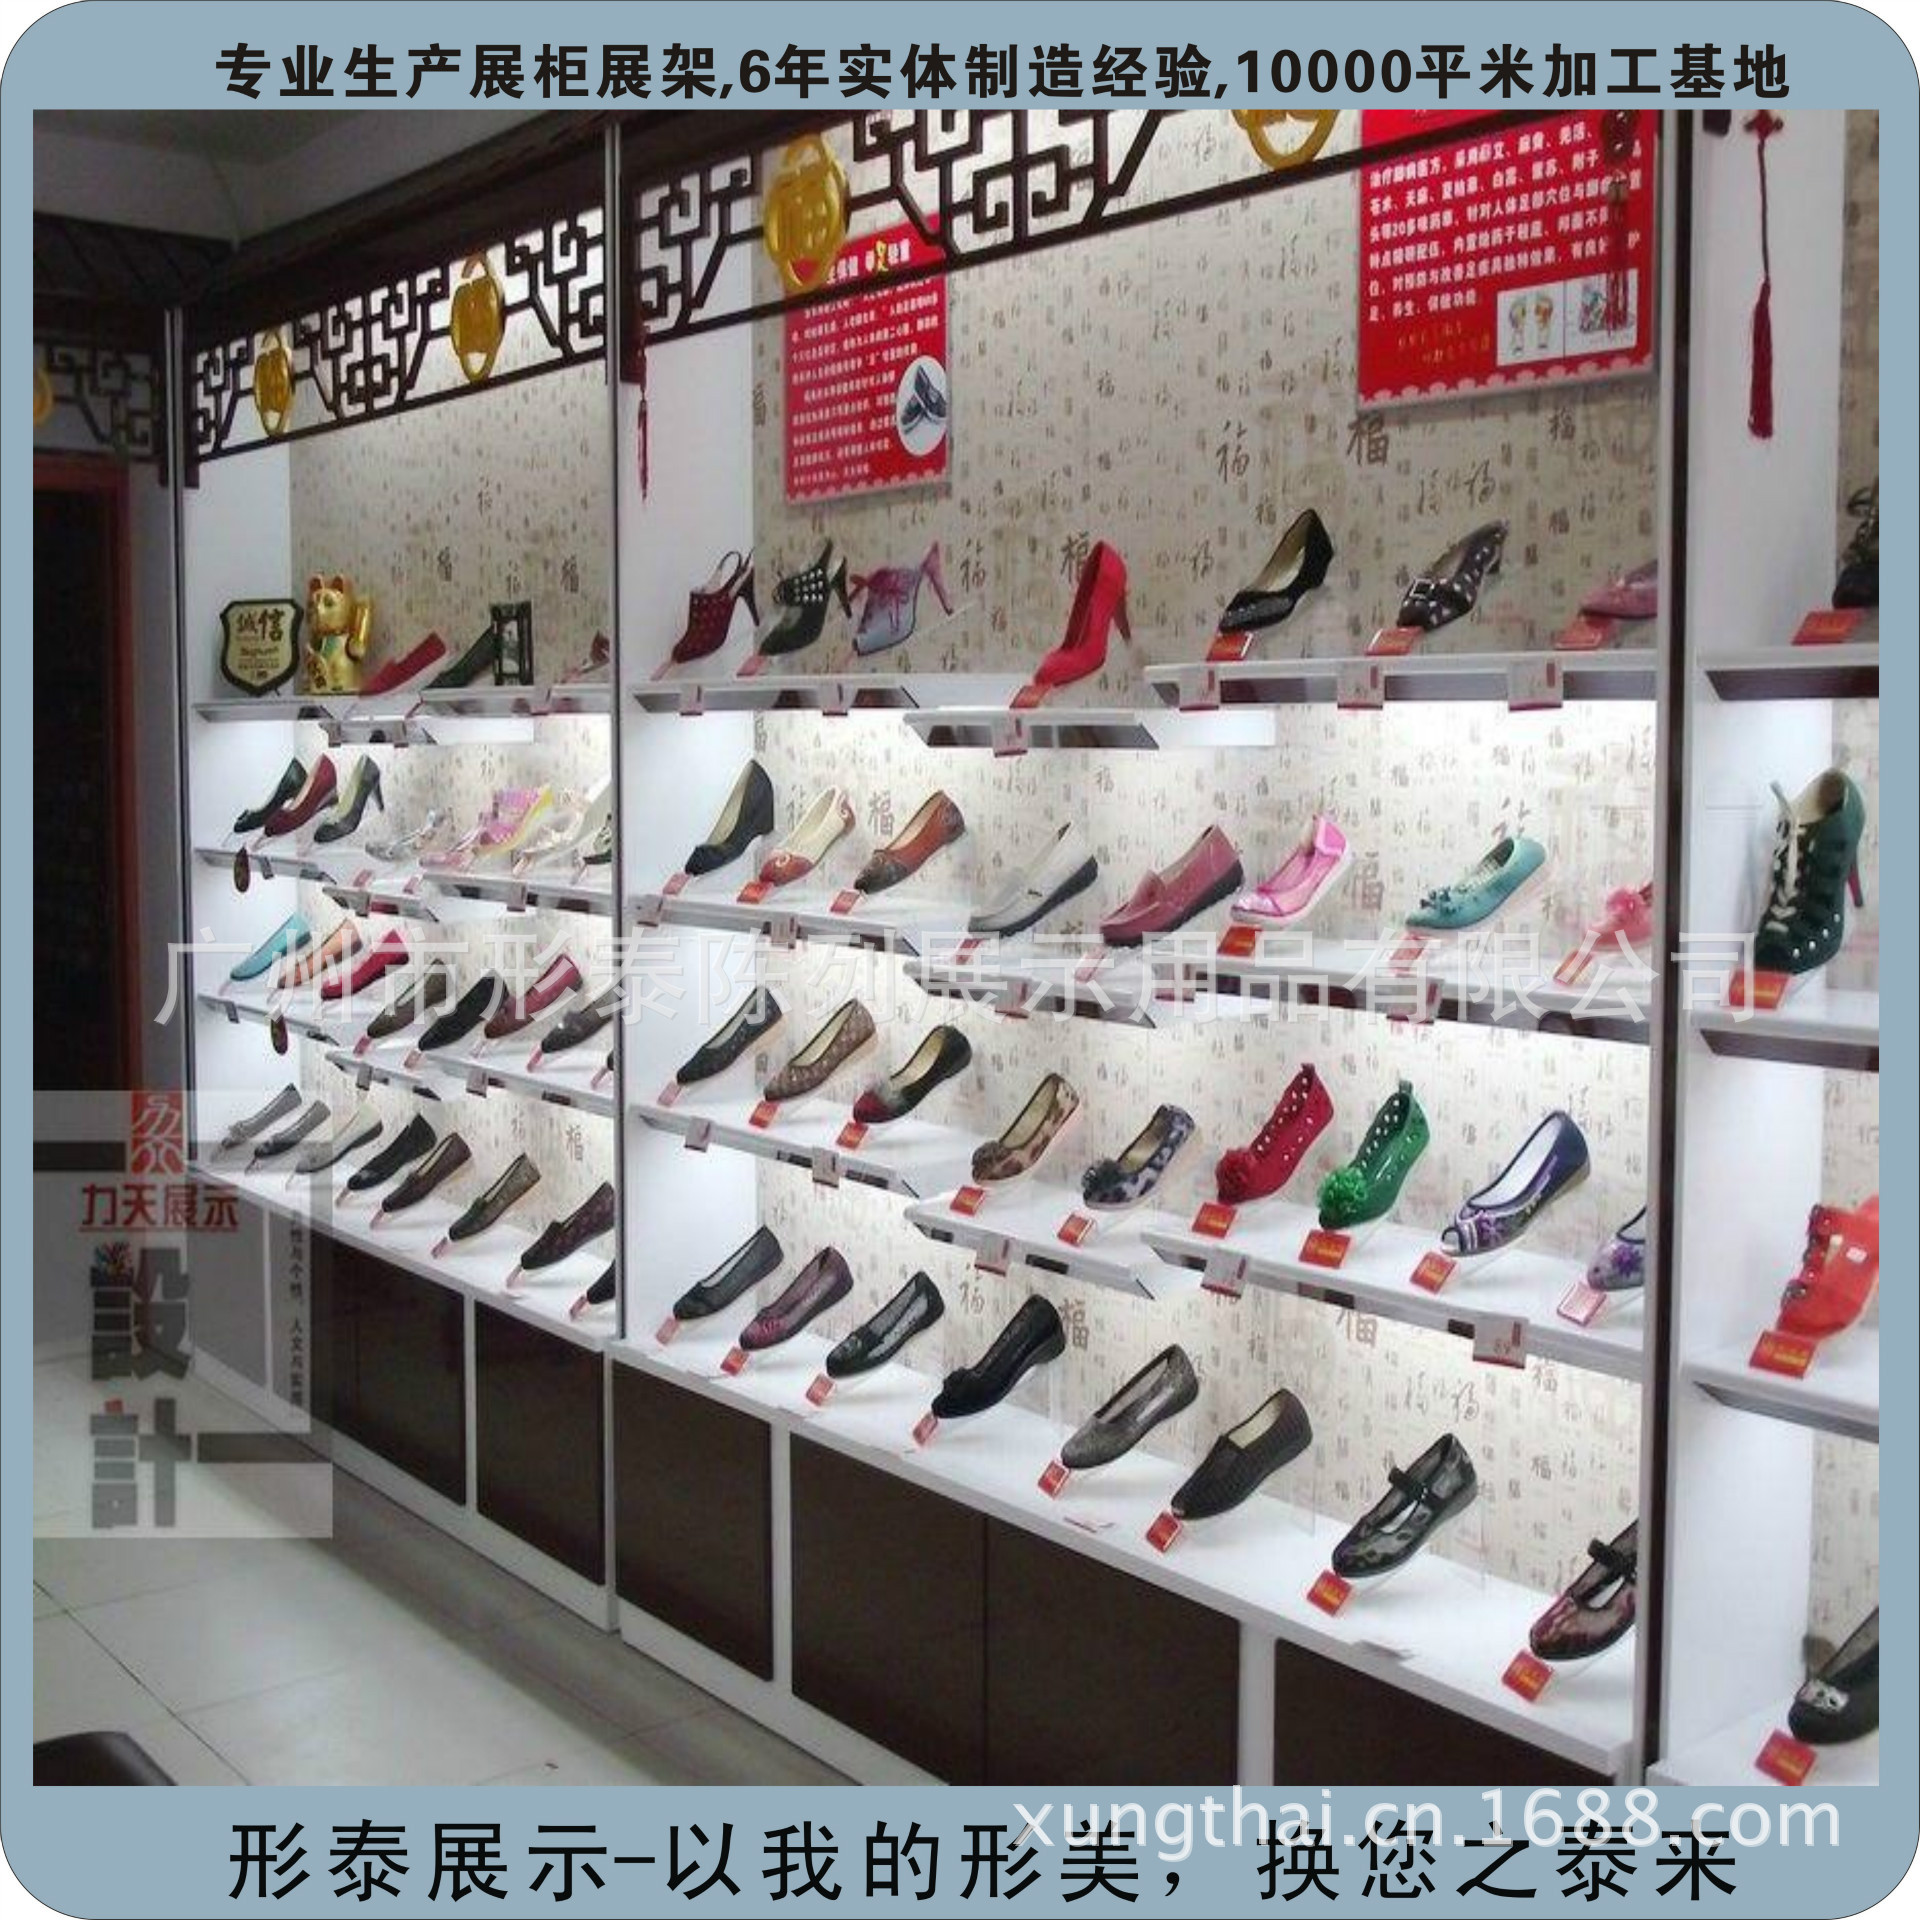 鞋店鞋架 展示柜展示架 样品柜 服装货架 货架展示柜 木架货架